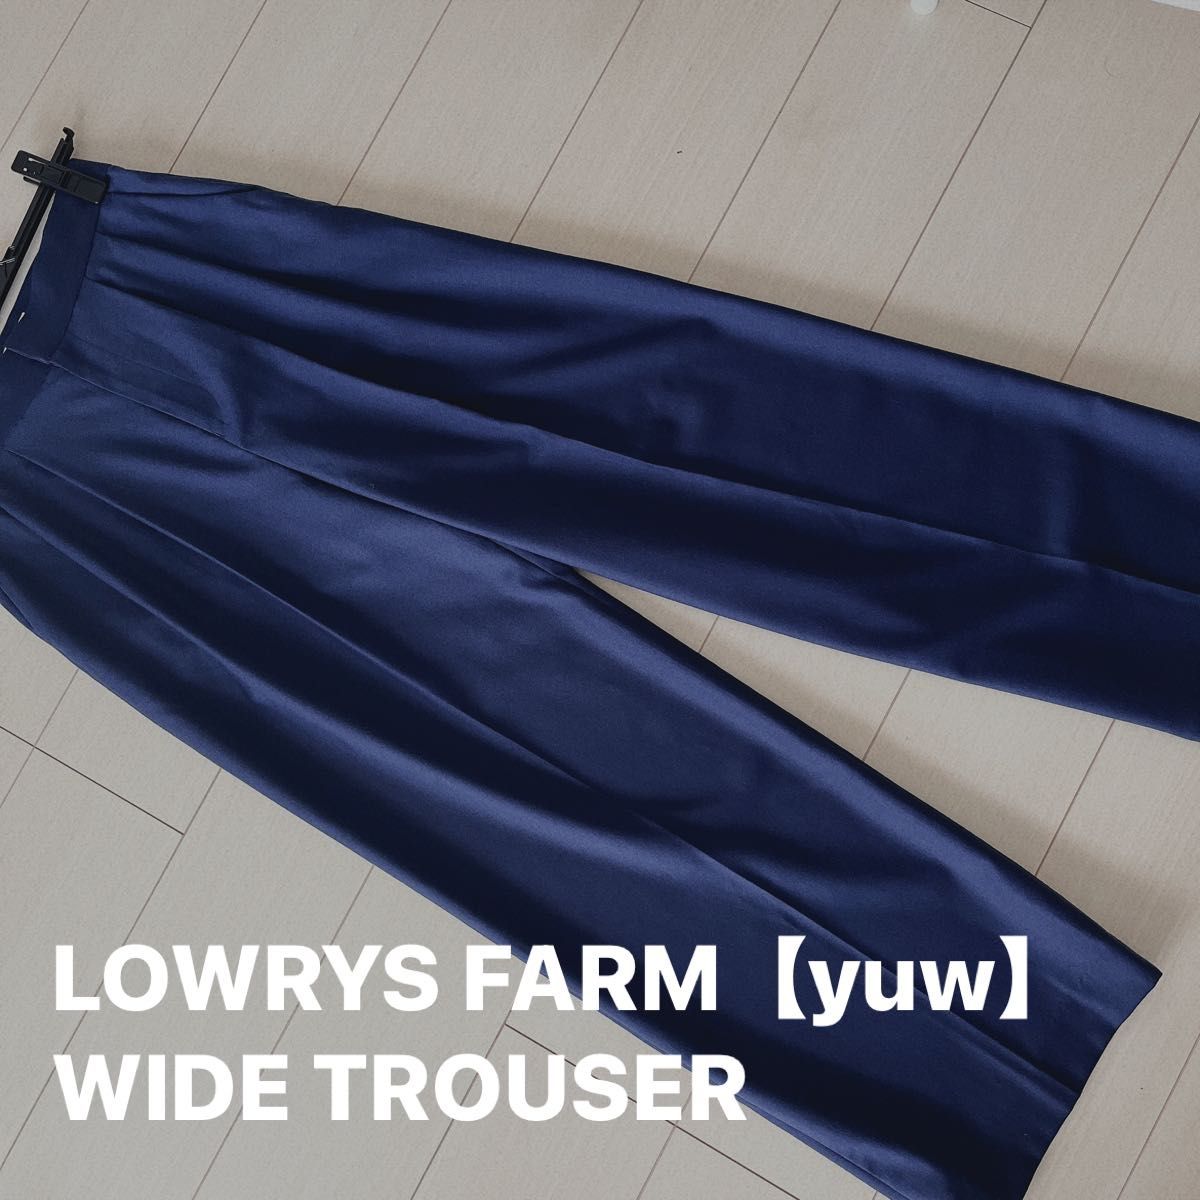 【商品は濃いブルー】LOWRYS FARM【yuw】WIDE TROUSER ダークブルー ネイビー ブルー　写真はイメージ